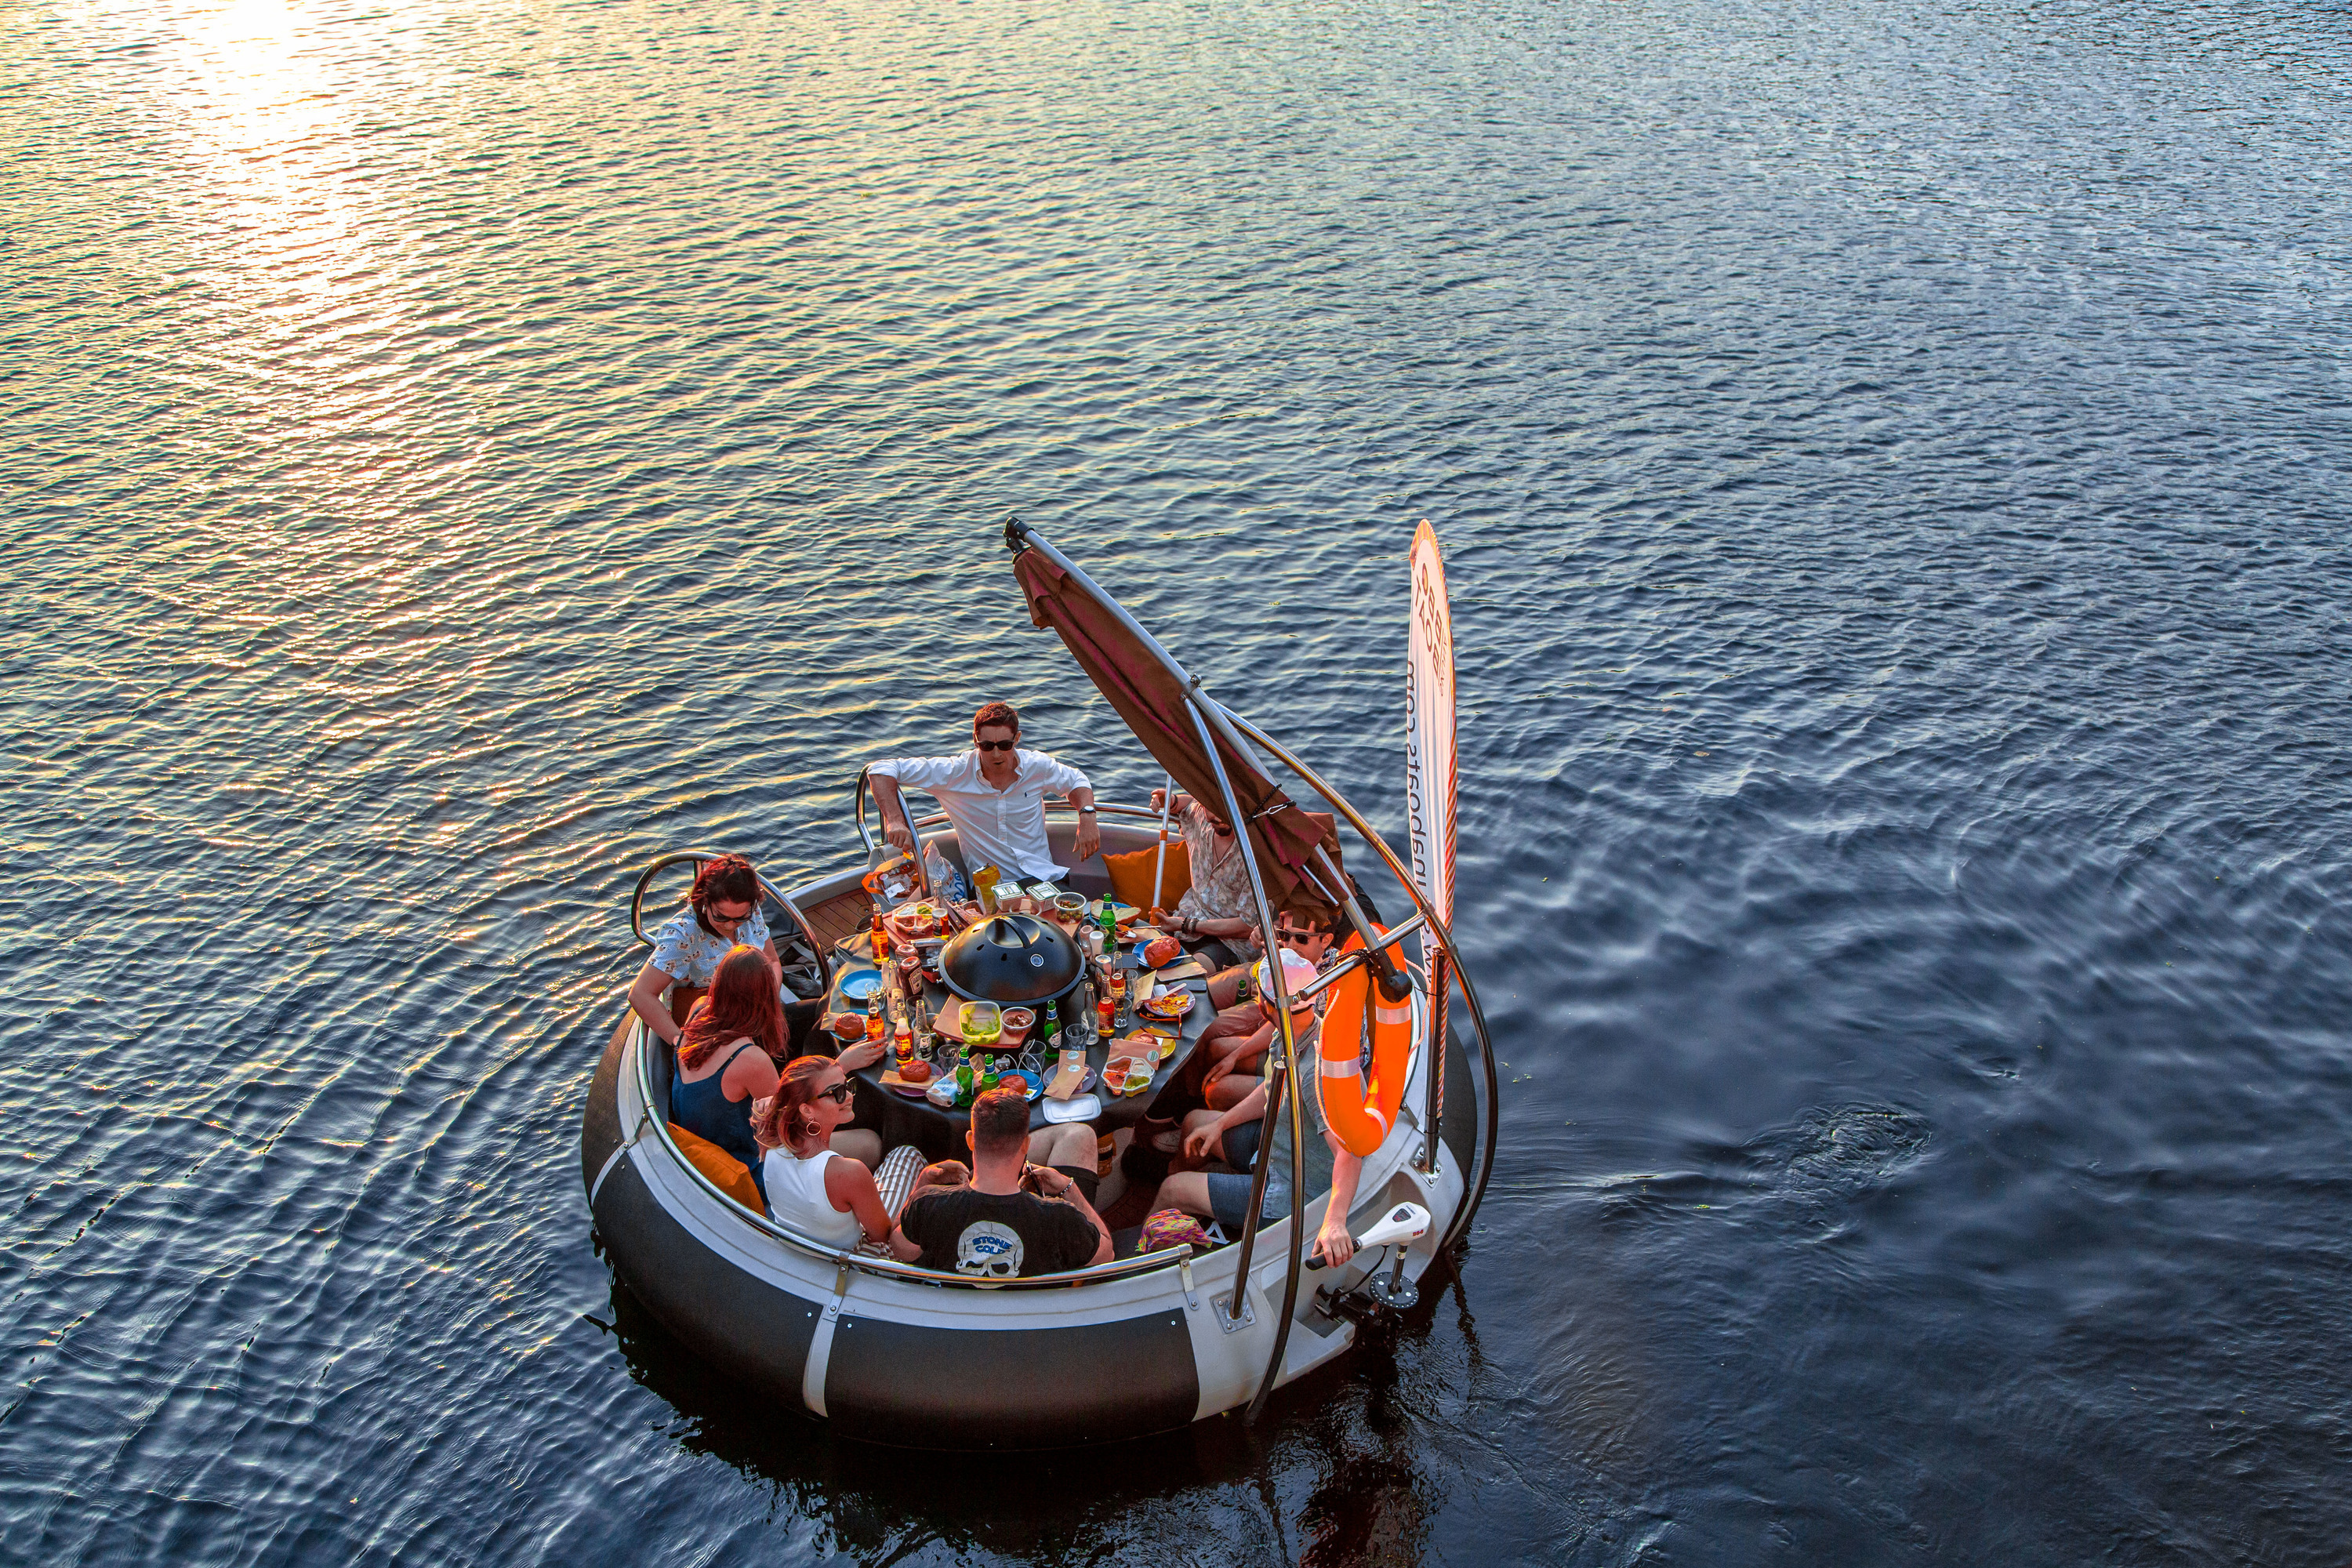 kogel Blokkeren Onzuiver London's BBQ Boats are back at West India for summer